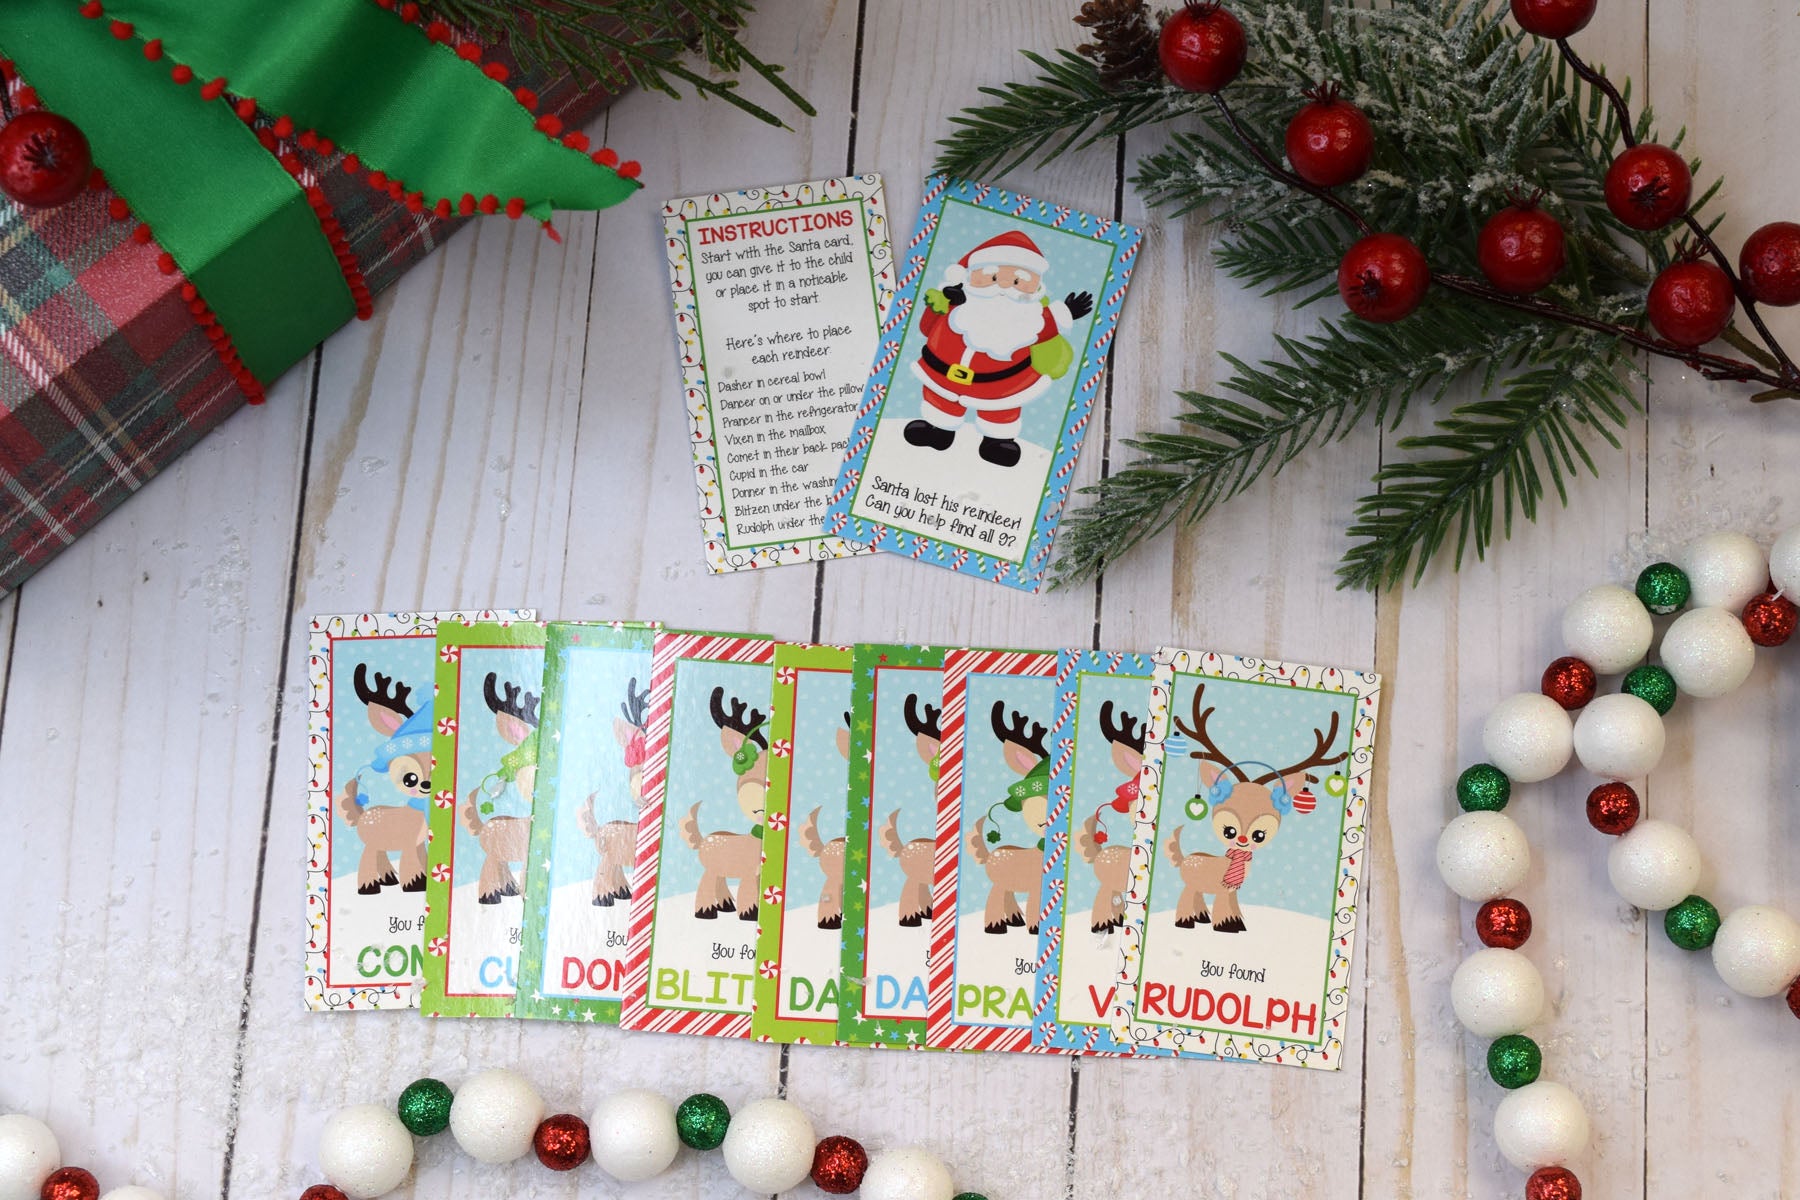 Santa's Reindeer Hunt Game – Amanda Creation